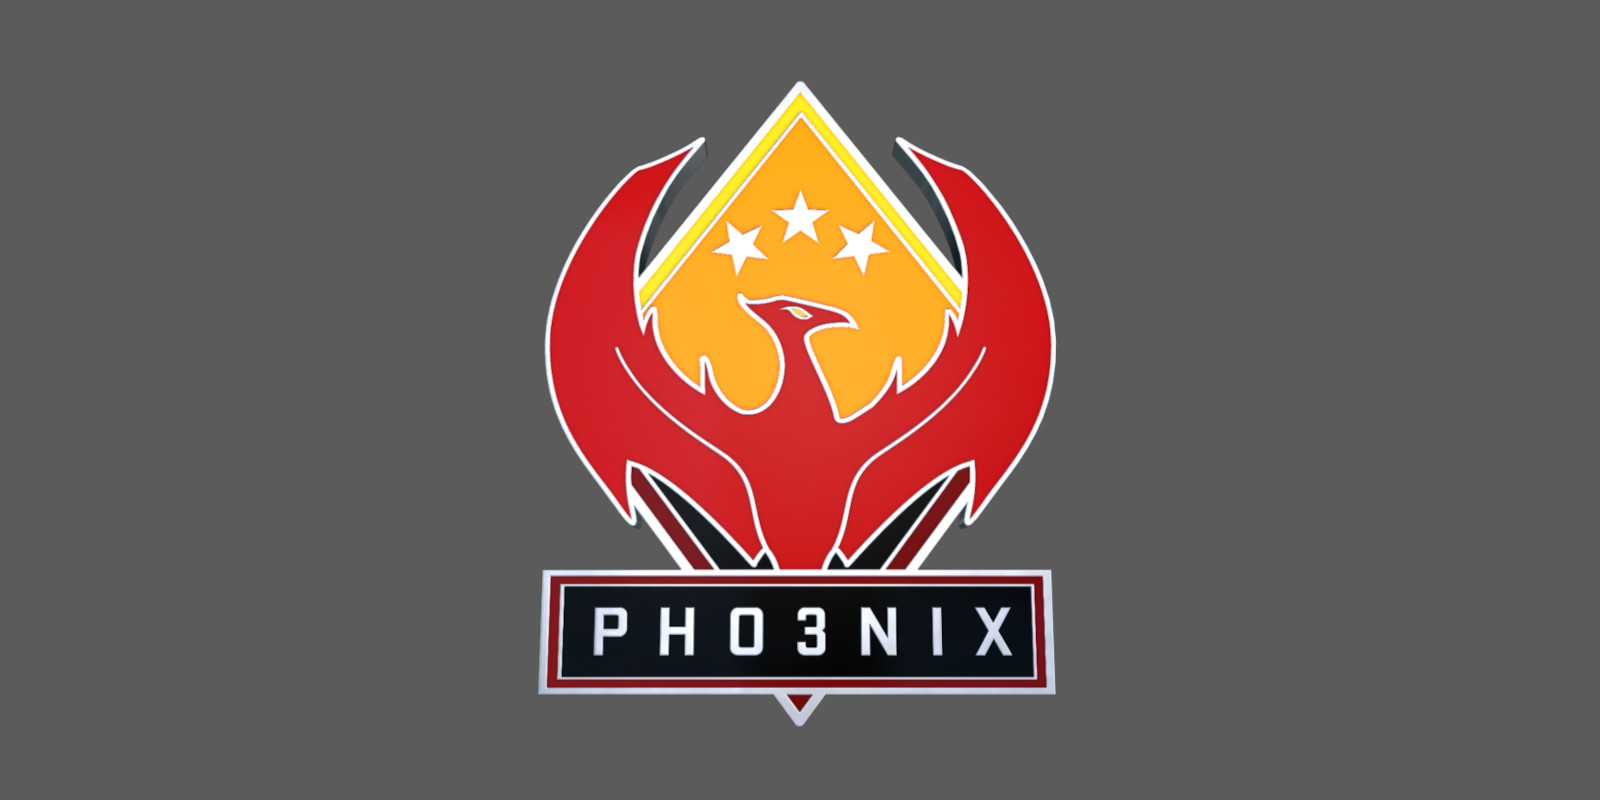 CS:GO - Series 2 - Phoenix Collectible Pin 282.48 $